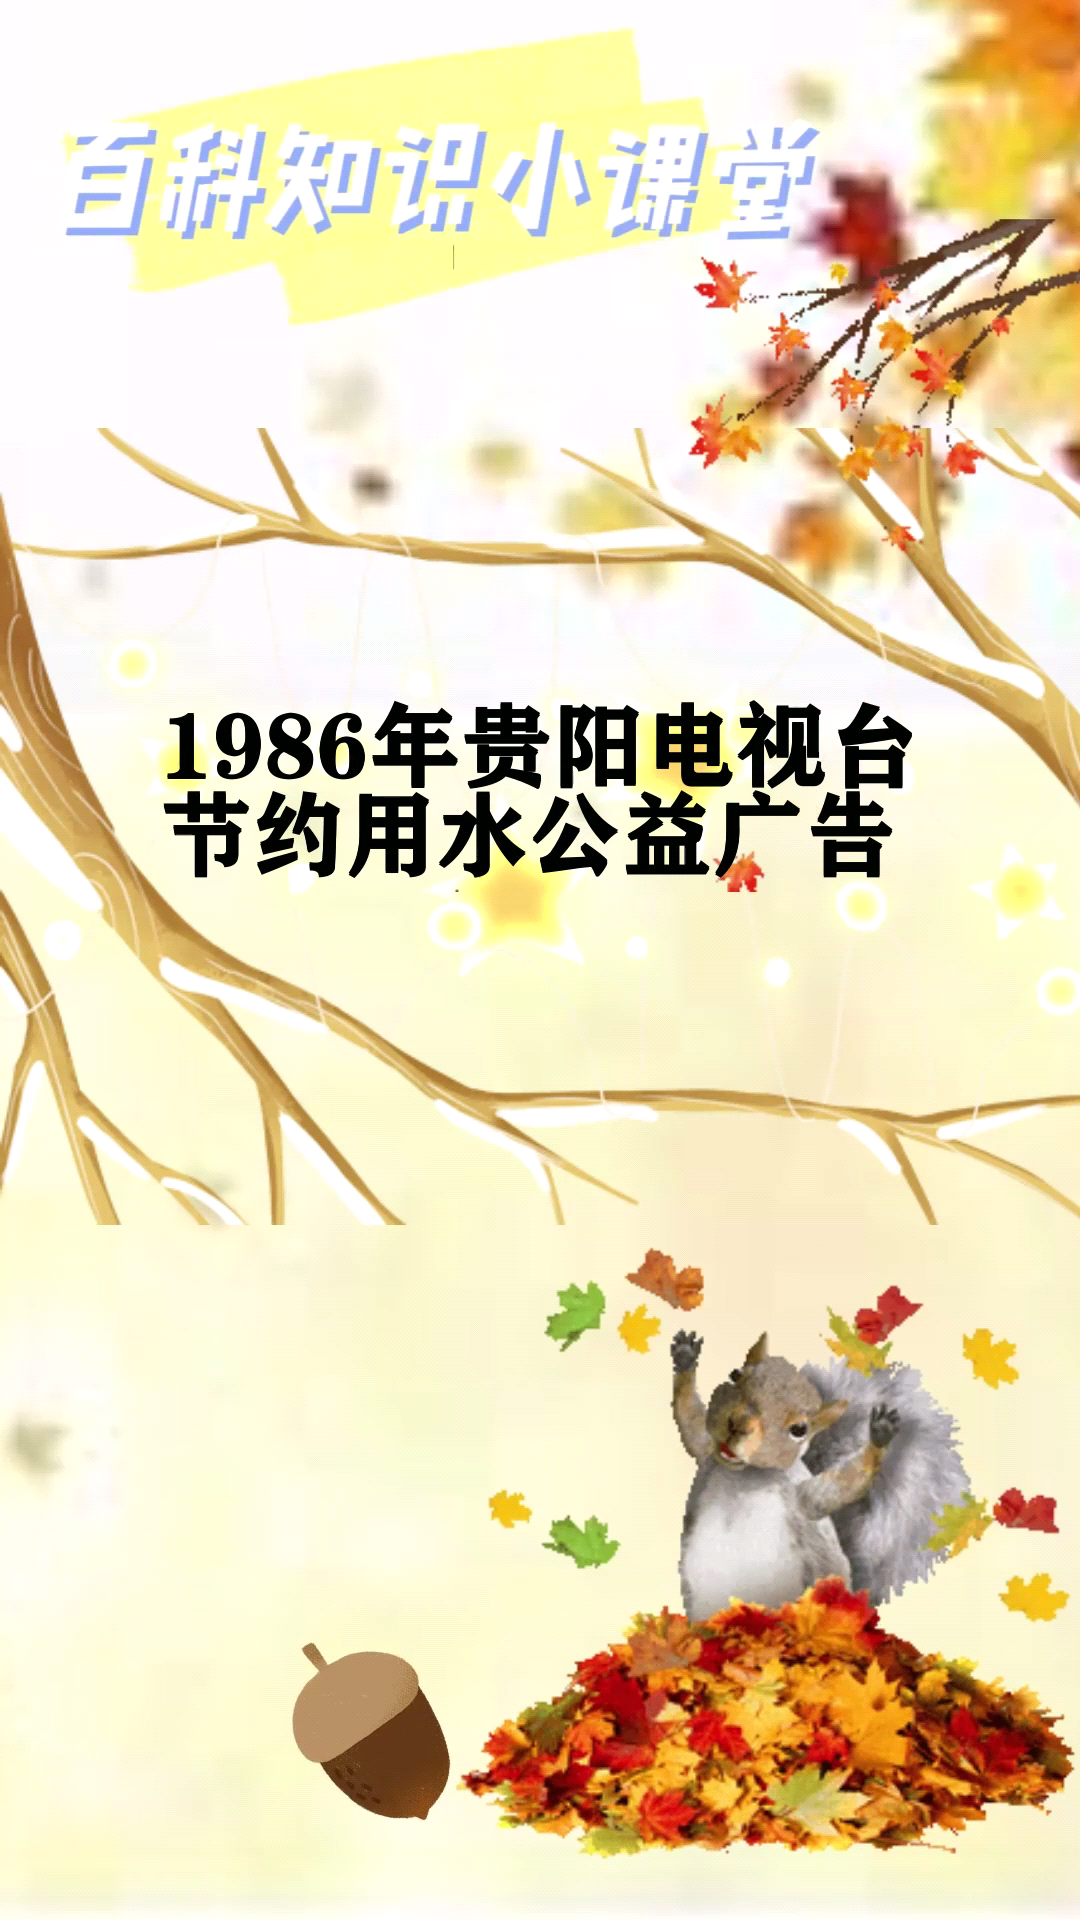 1986年贵阳电视台节约用水公益广告